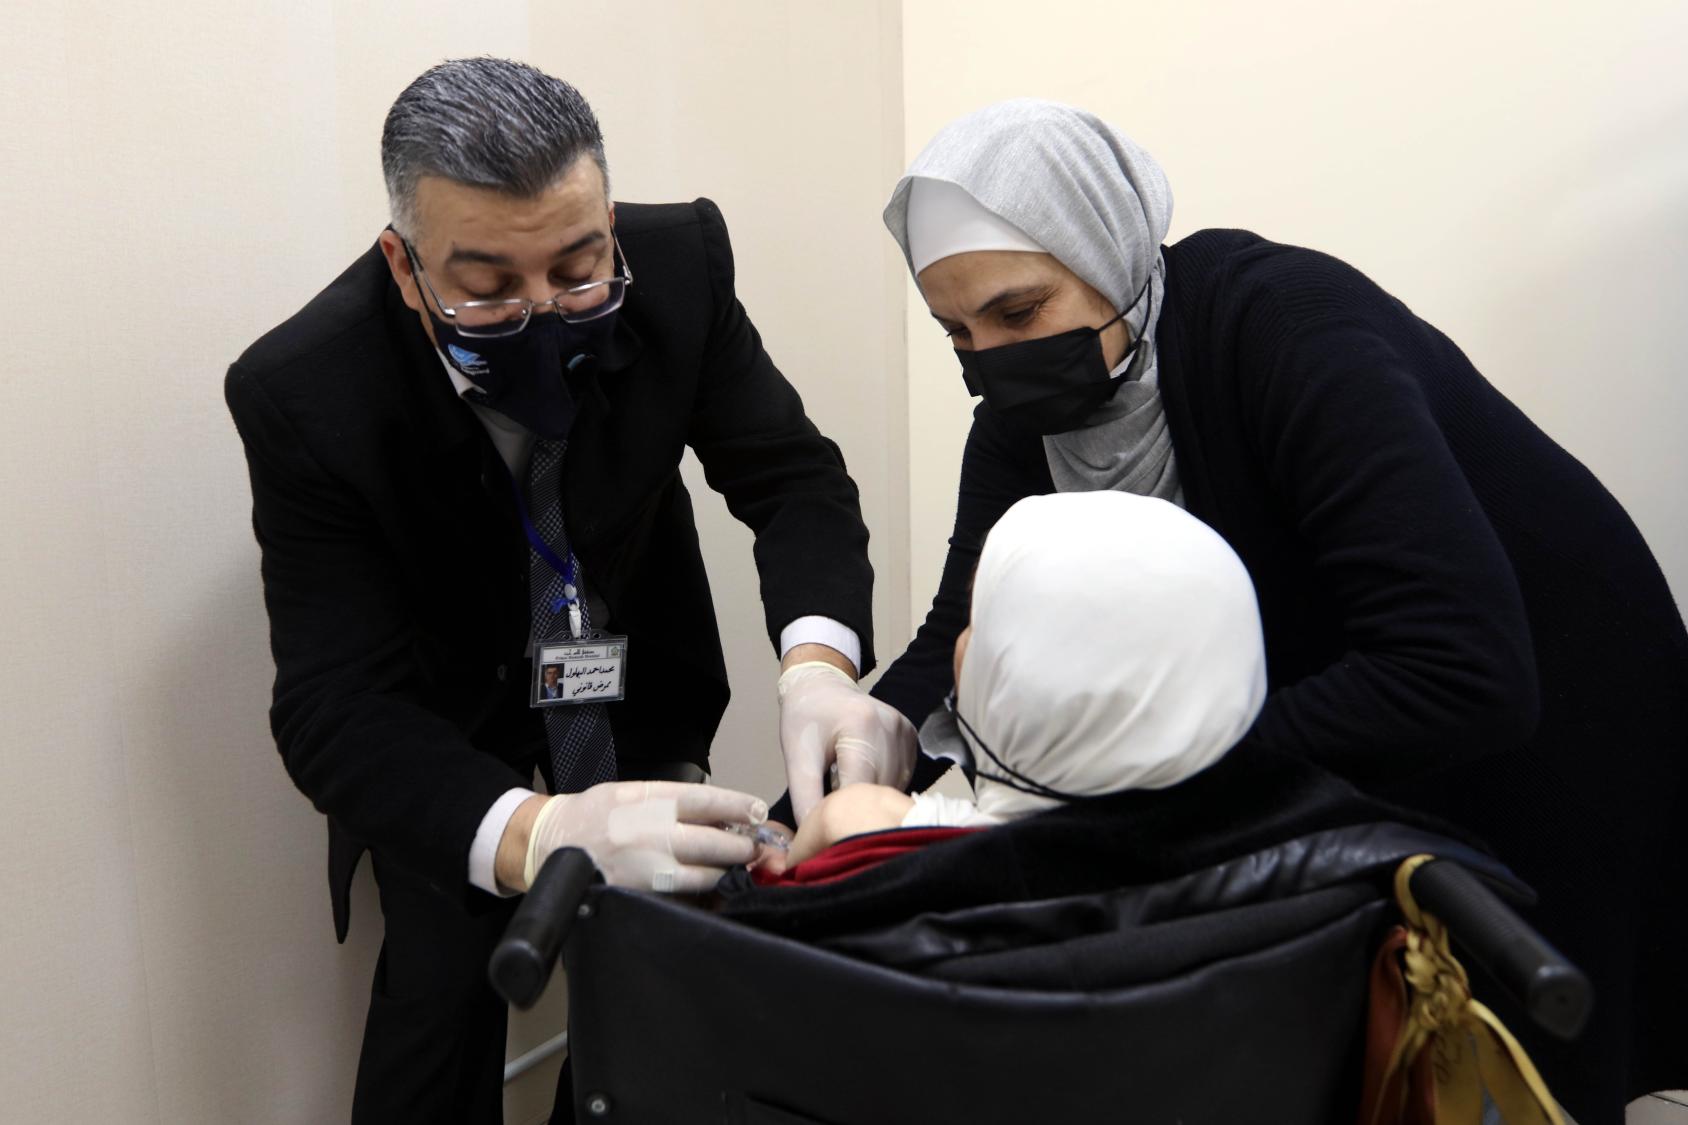 Una mujer en silla de ruedas recibe la vacuna contra la COVID-19 de manos de dos personas con mascarillas negras.